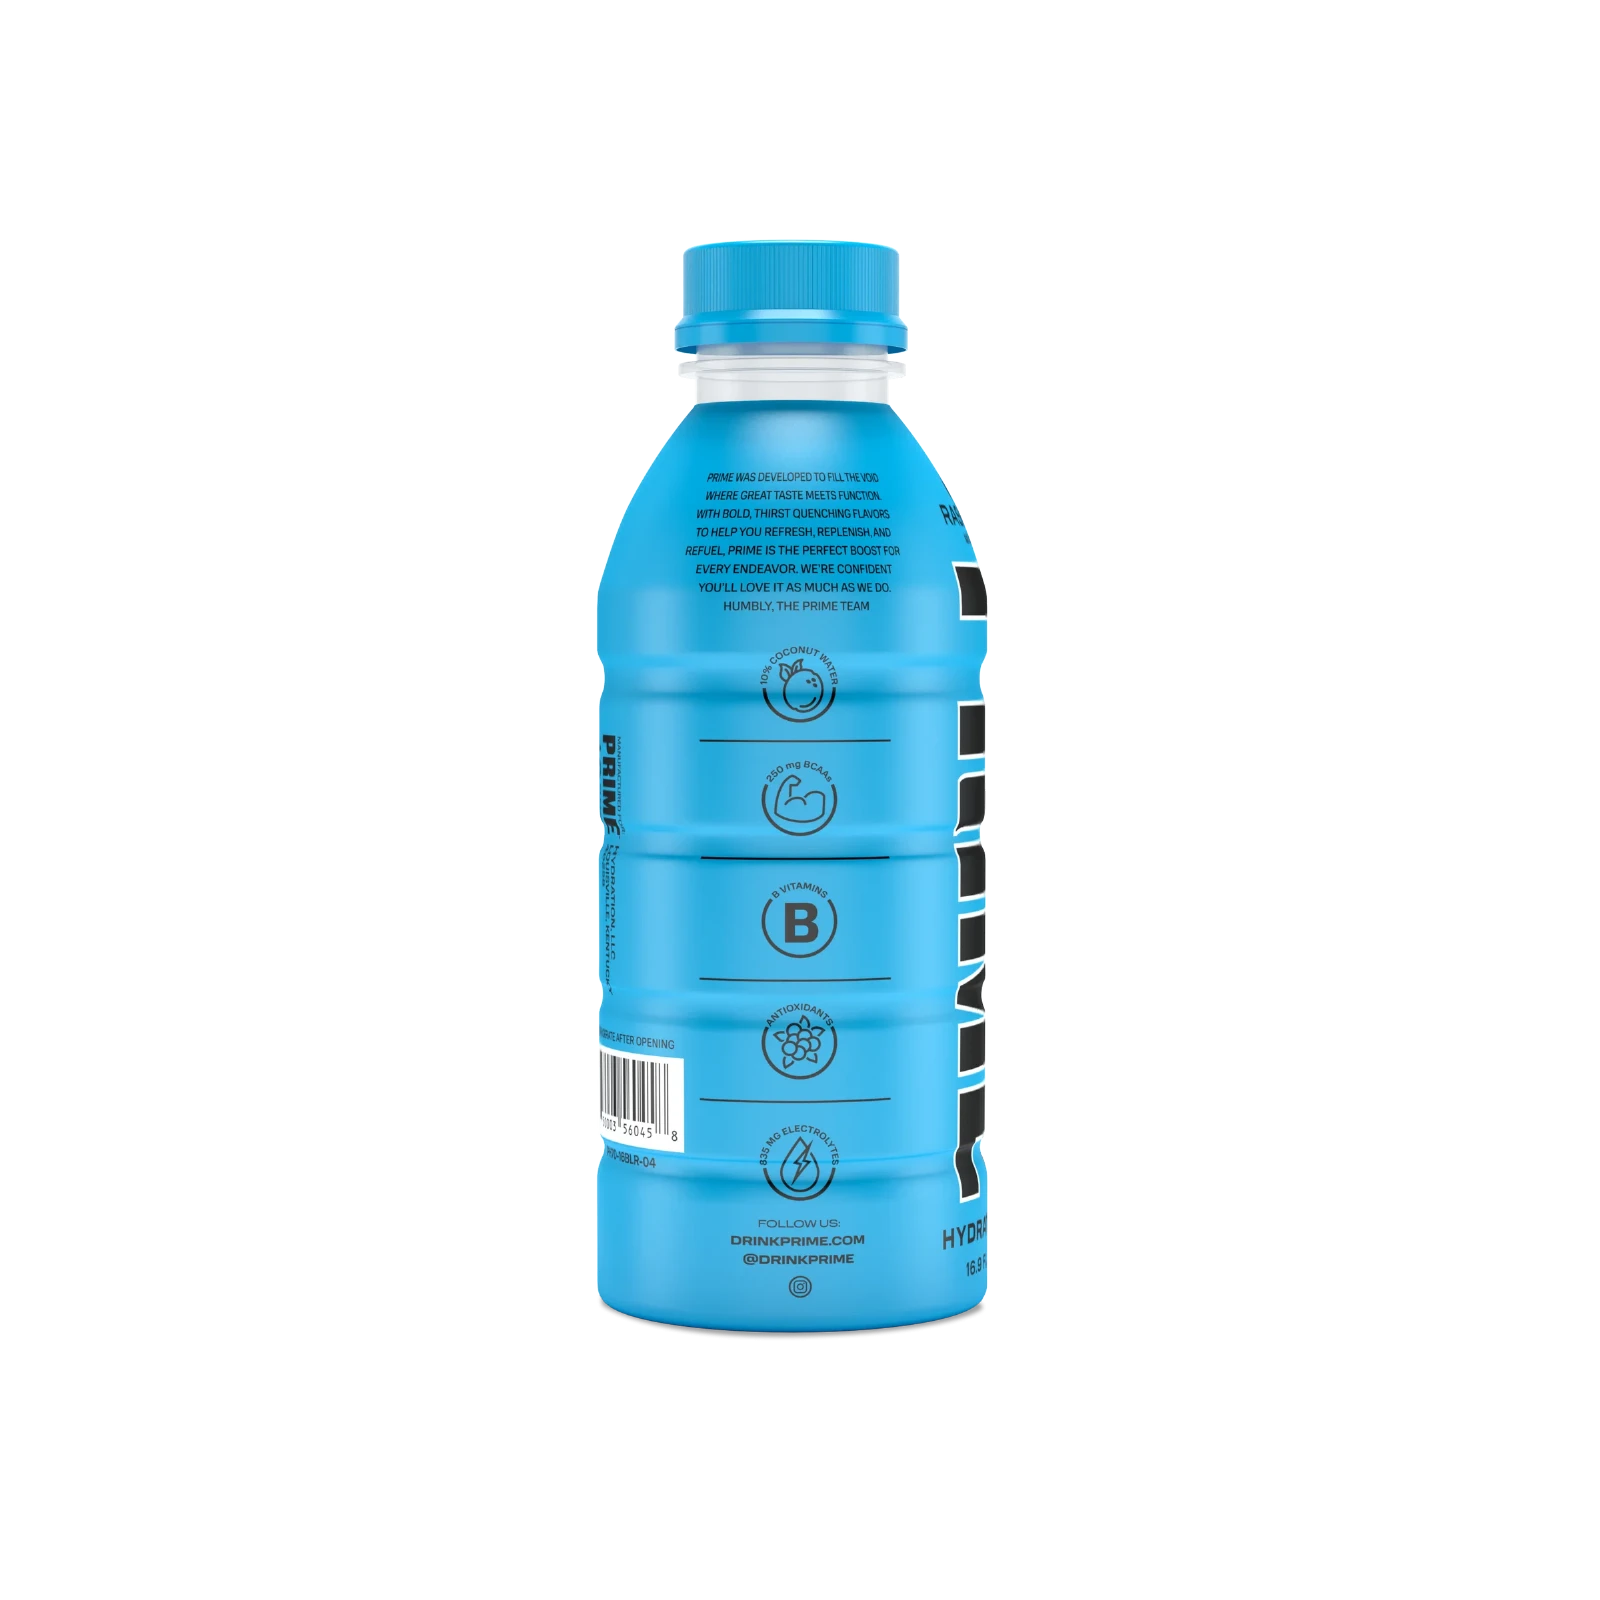 Prime Hydration - Sportdrink - Blue Raspberry - 500 ml - Energy Drink von Logan Paul und KSI - Aus den USA 3